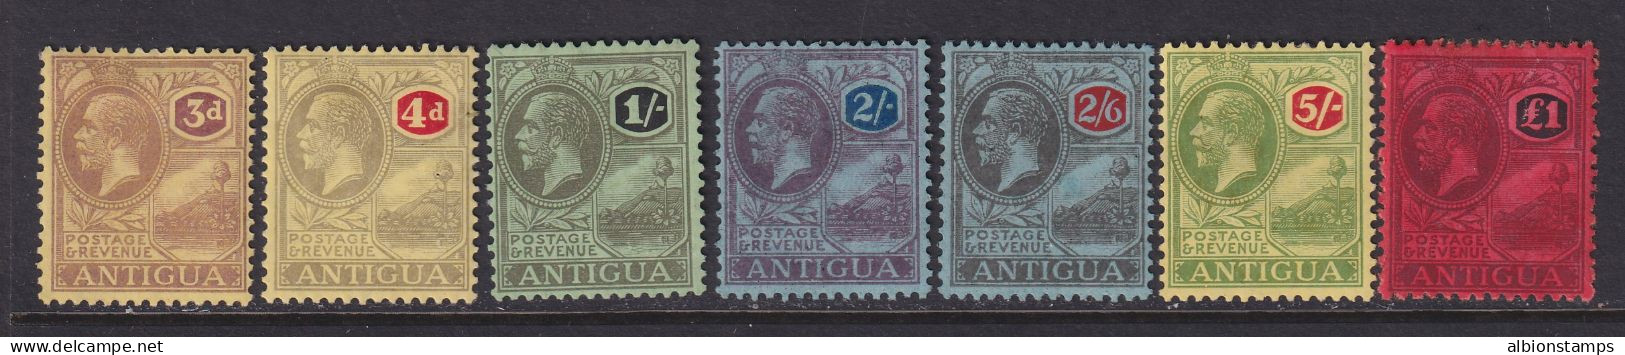 Antigua, Scott 58-64 (SG 55-61), MHR (£1 Some Album Remnants) - 1858-1960 Colonia Britannica